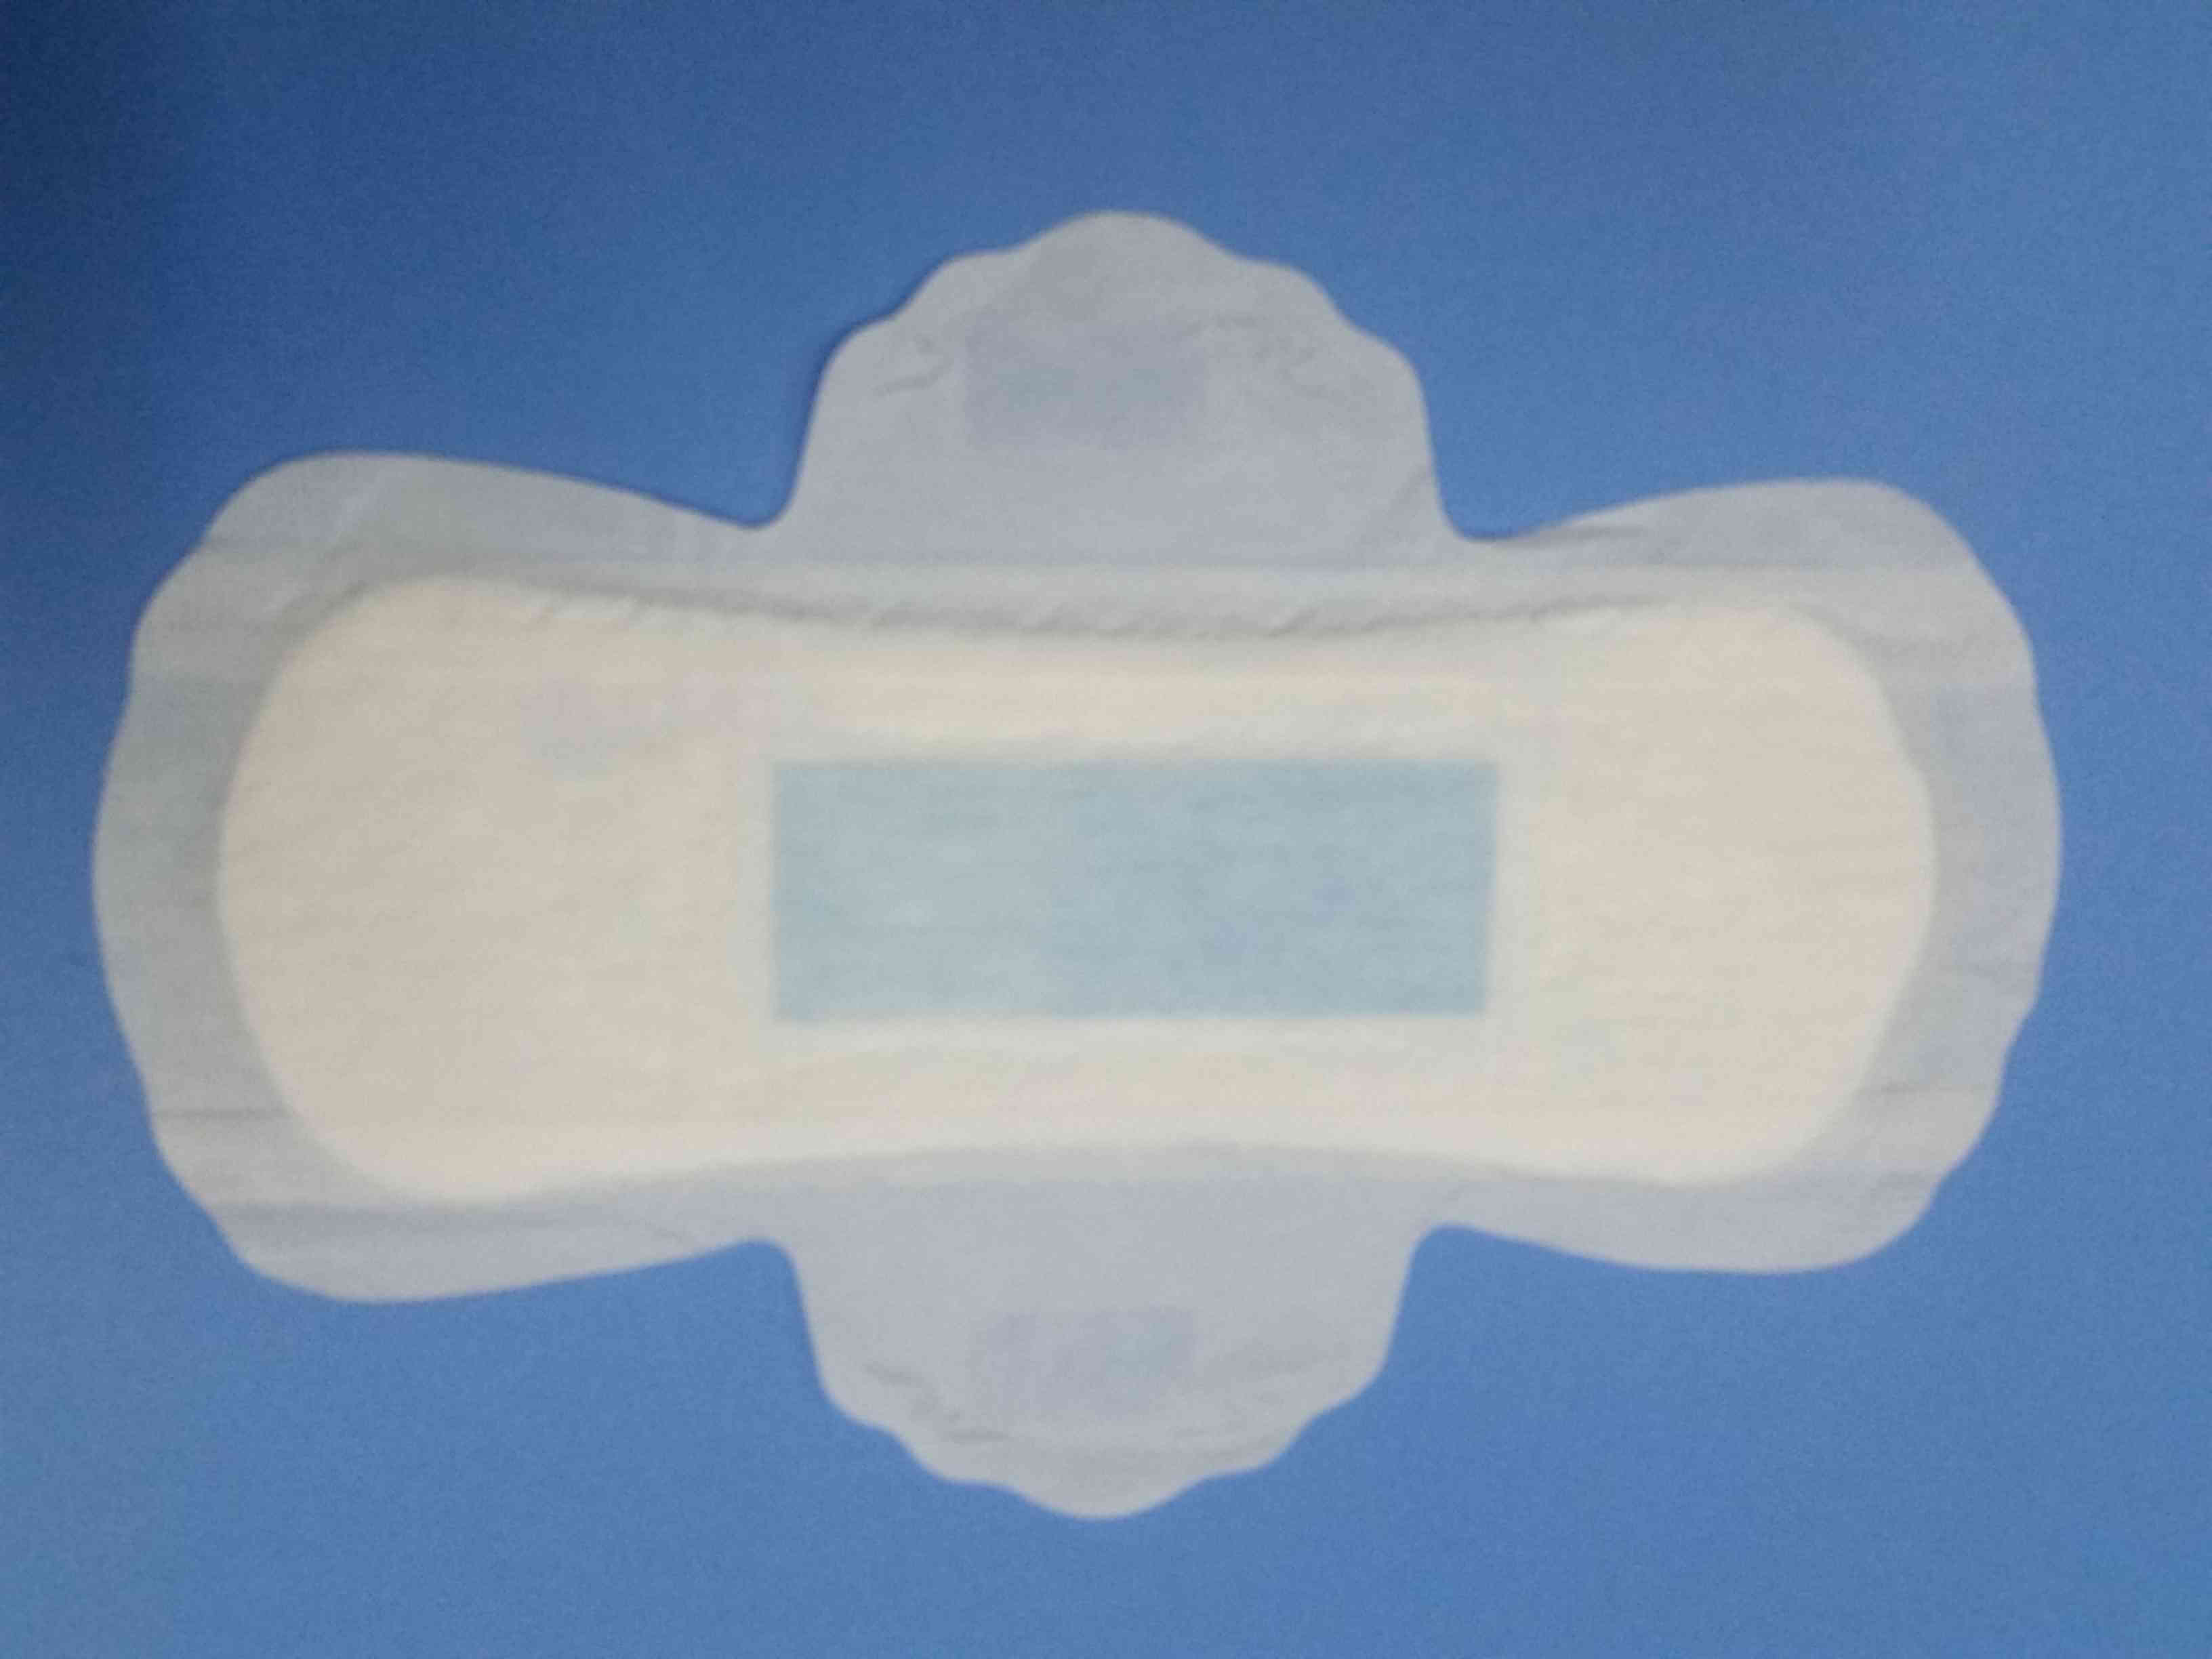 孕妇使用护垫时要注意阴道的清洁